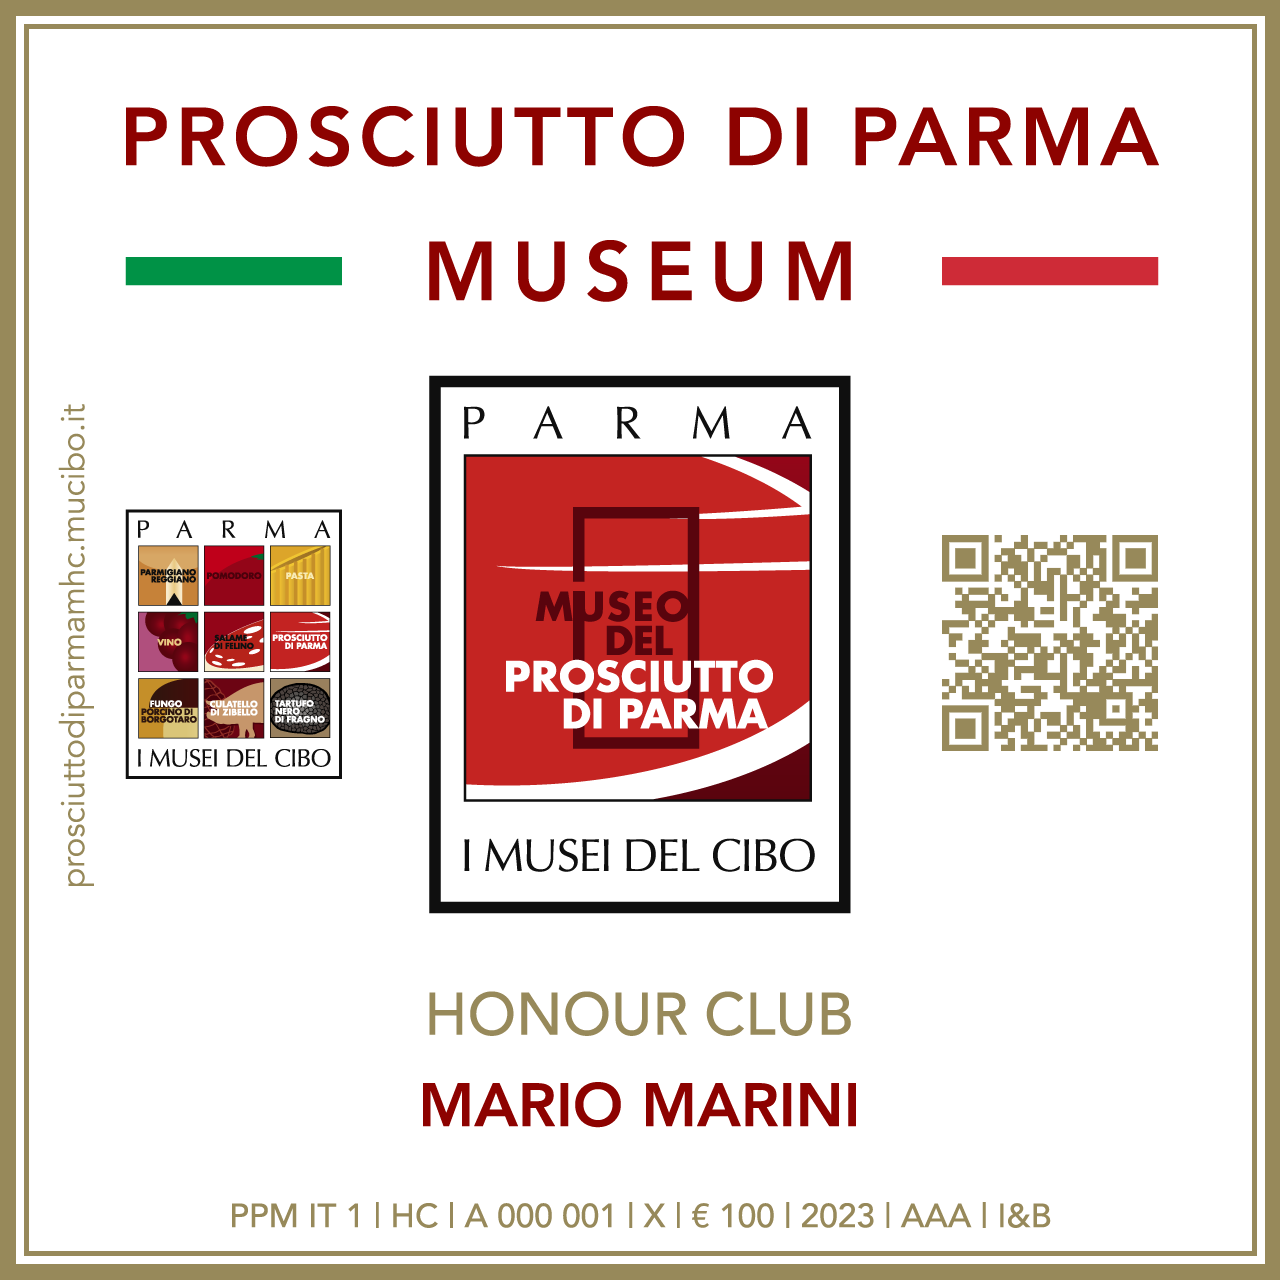 Prosciutto di Parma Museum Honour Club - Token Id A 000 001 - MARIO MARINI